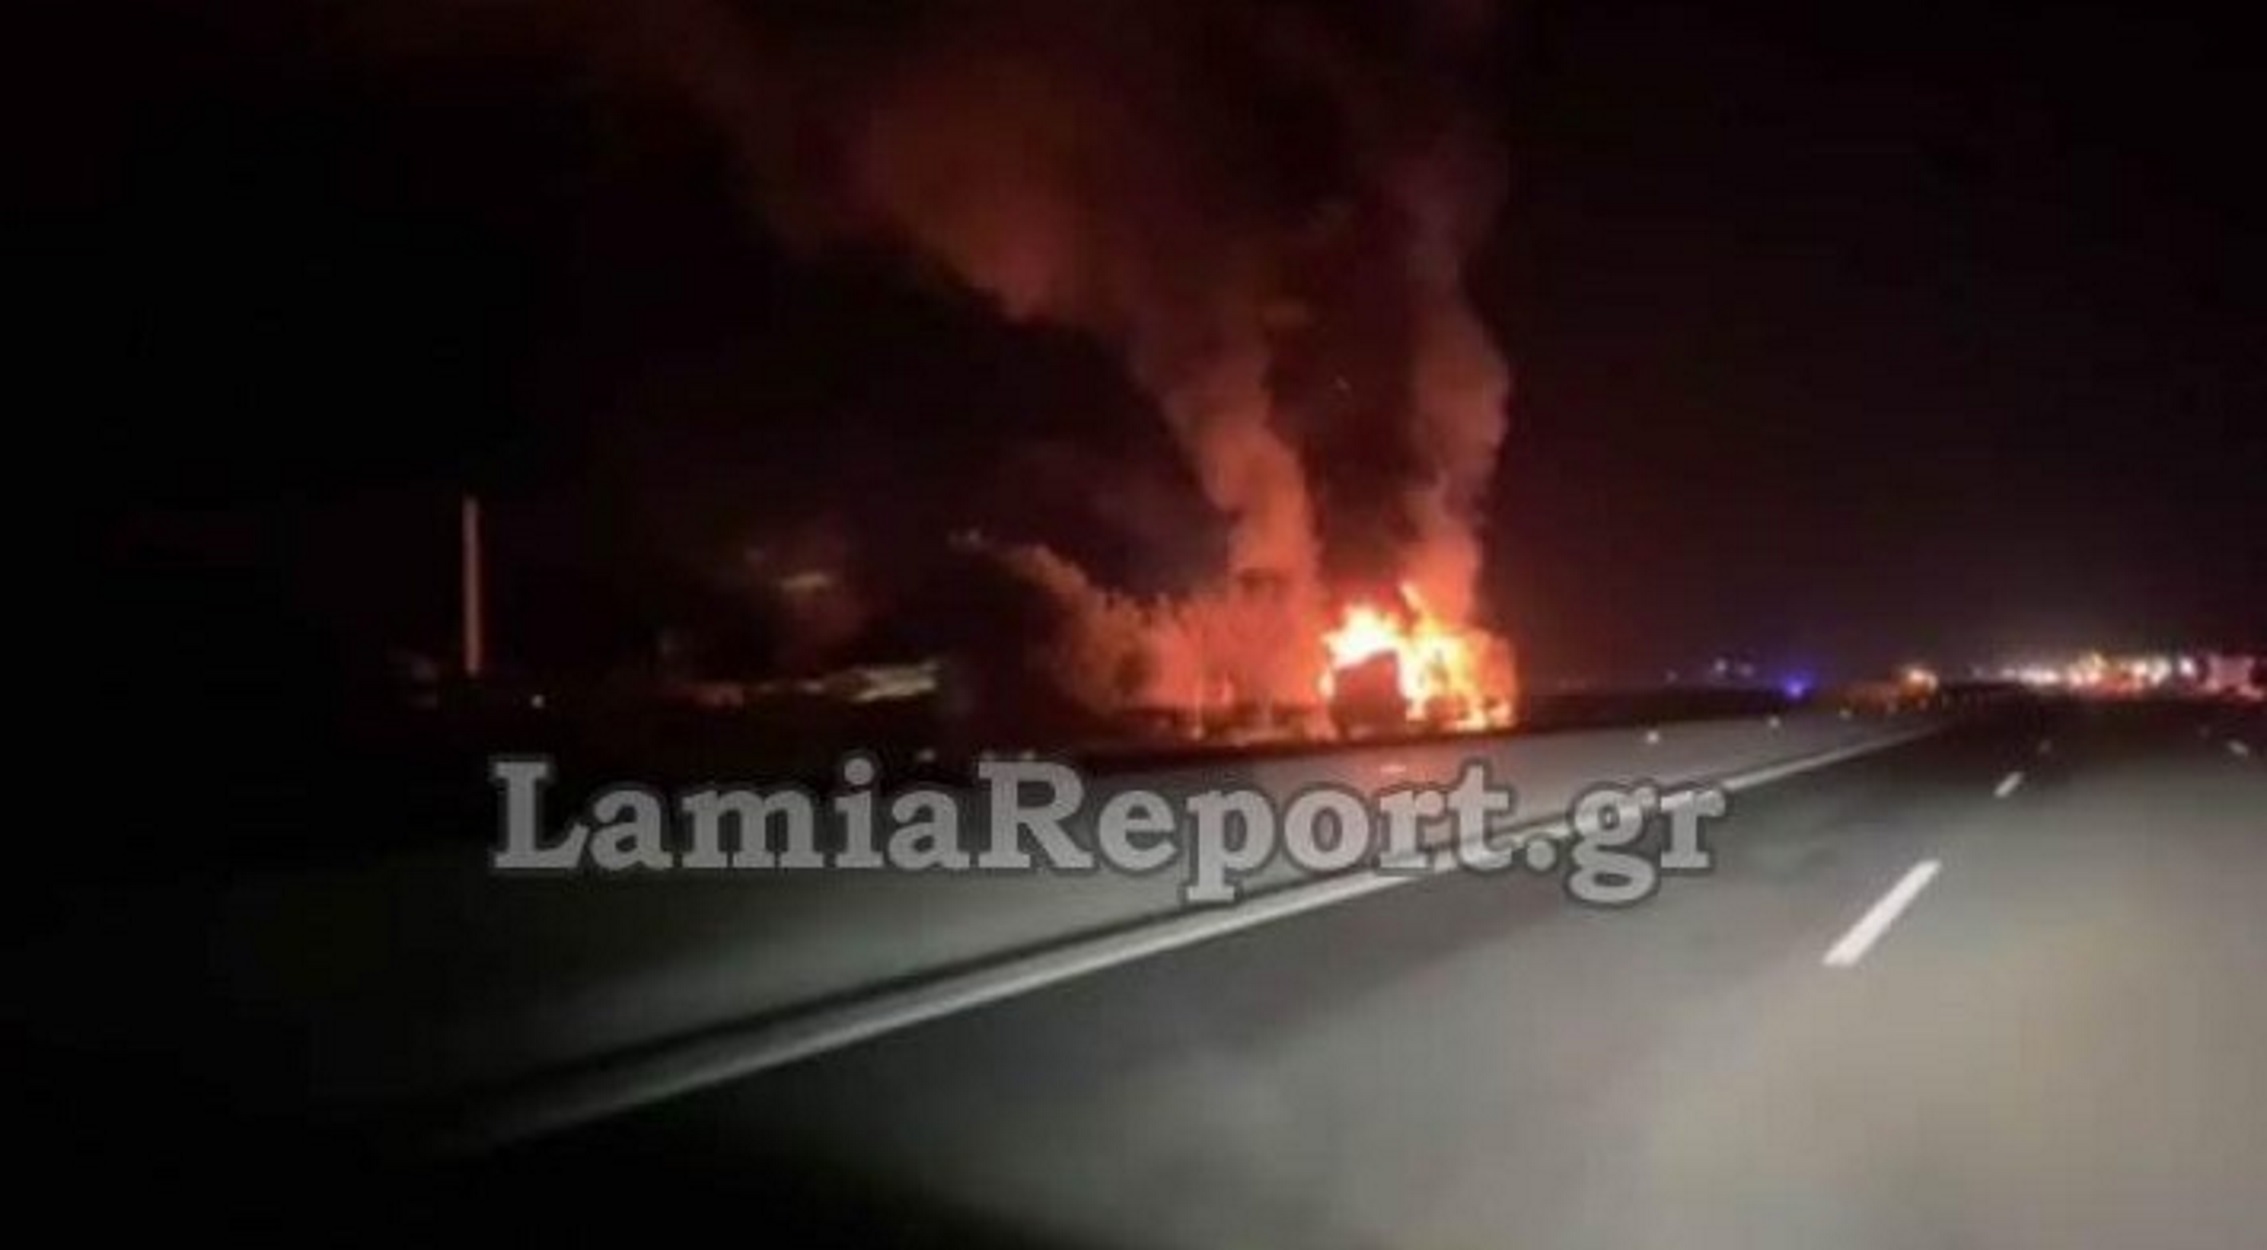 Καίγεται φορτηγό στην Αθηνών Λαμίας! Χάος από το μποτιλιάρισμα